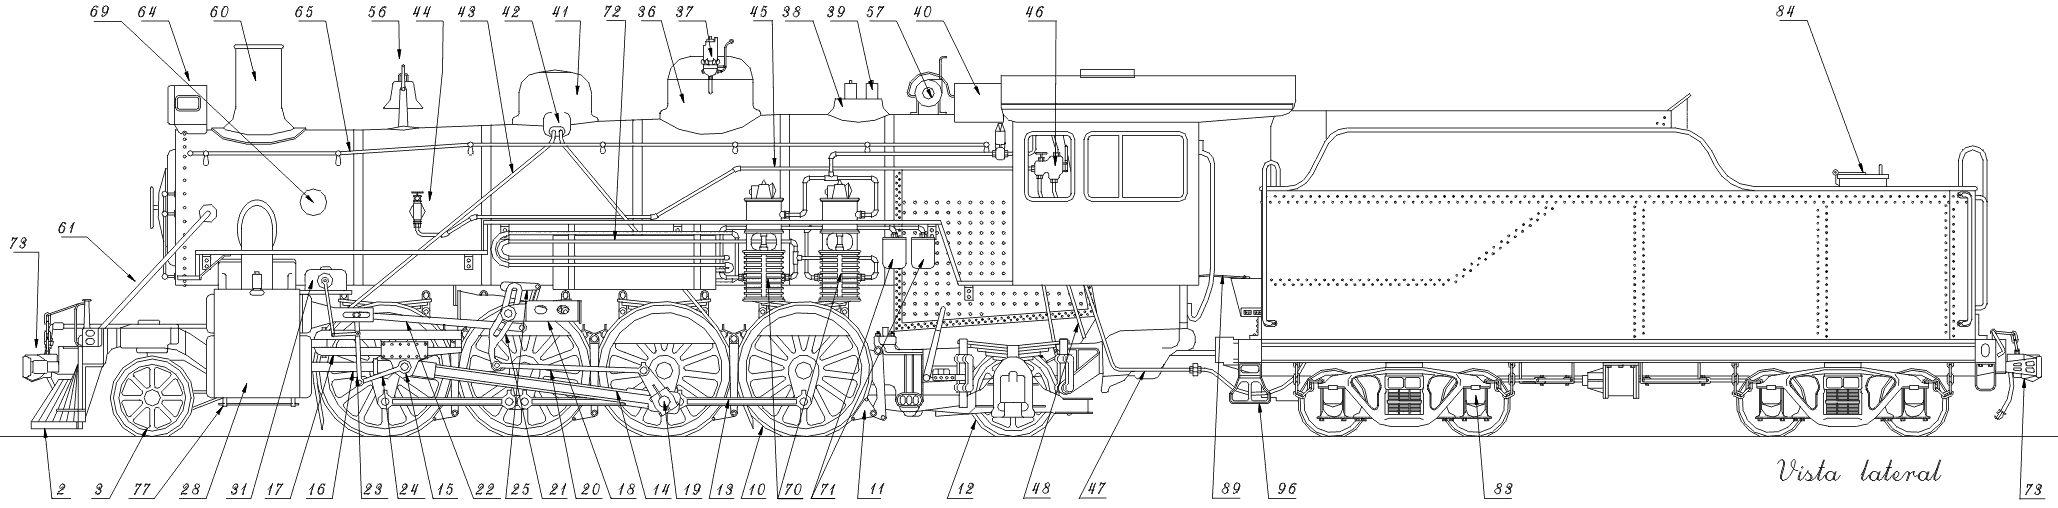 Vista de perfil da locomotiva com indicação numerada de cada parte que a compõe